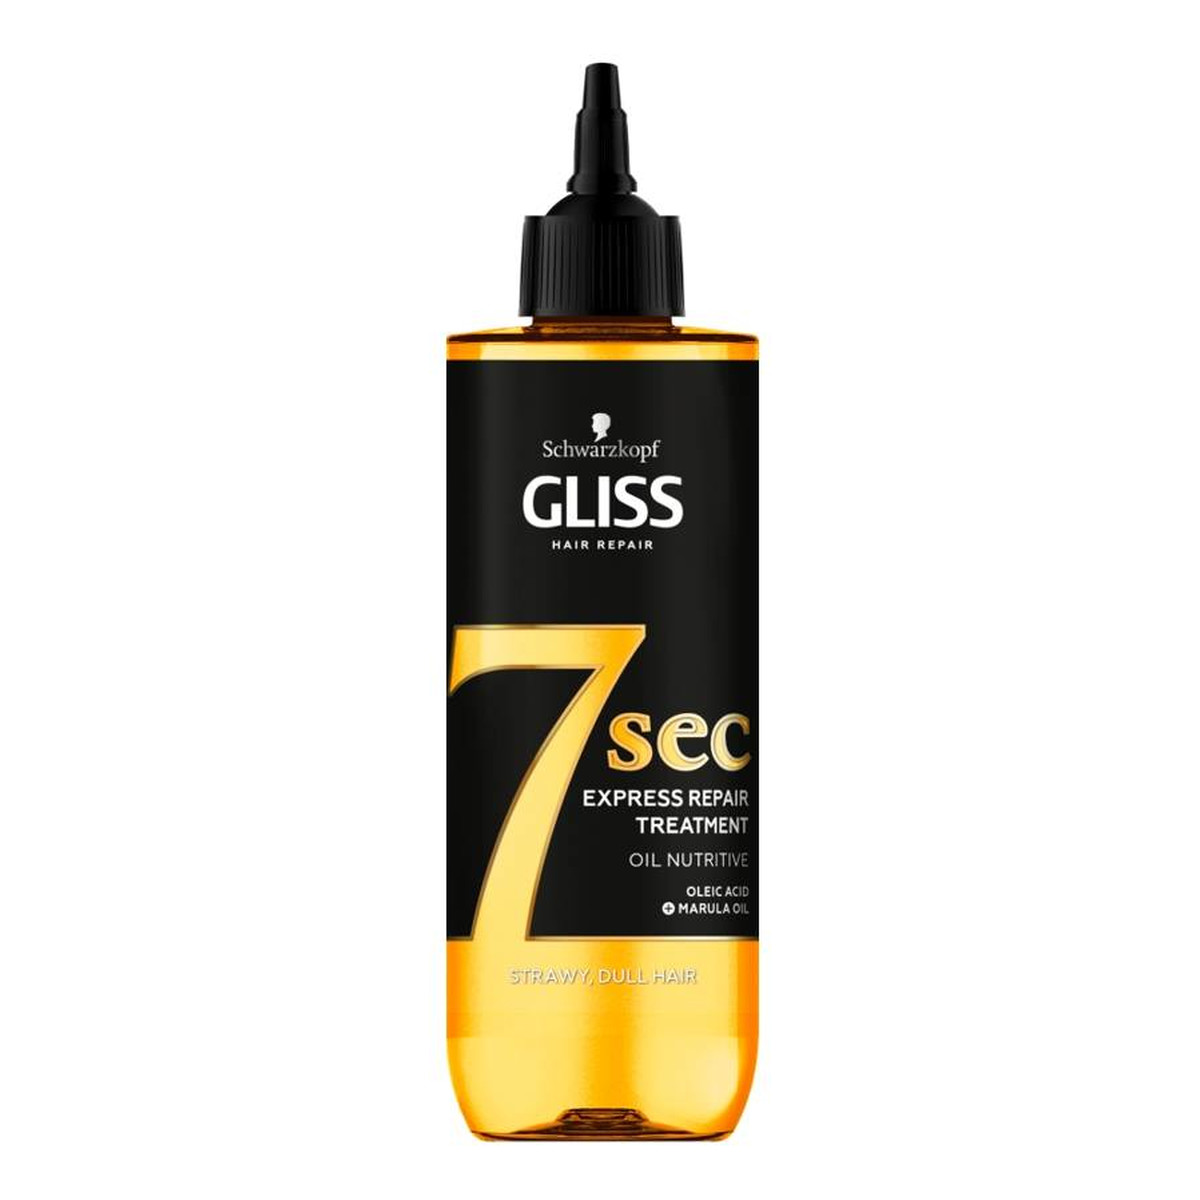 Gliss 7sec Express Repair Treatment Oil Nutritive ekspresowa kuracja do włosów nadająca miękkości i połysku 200ml